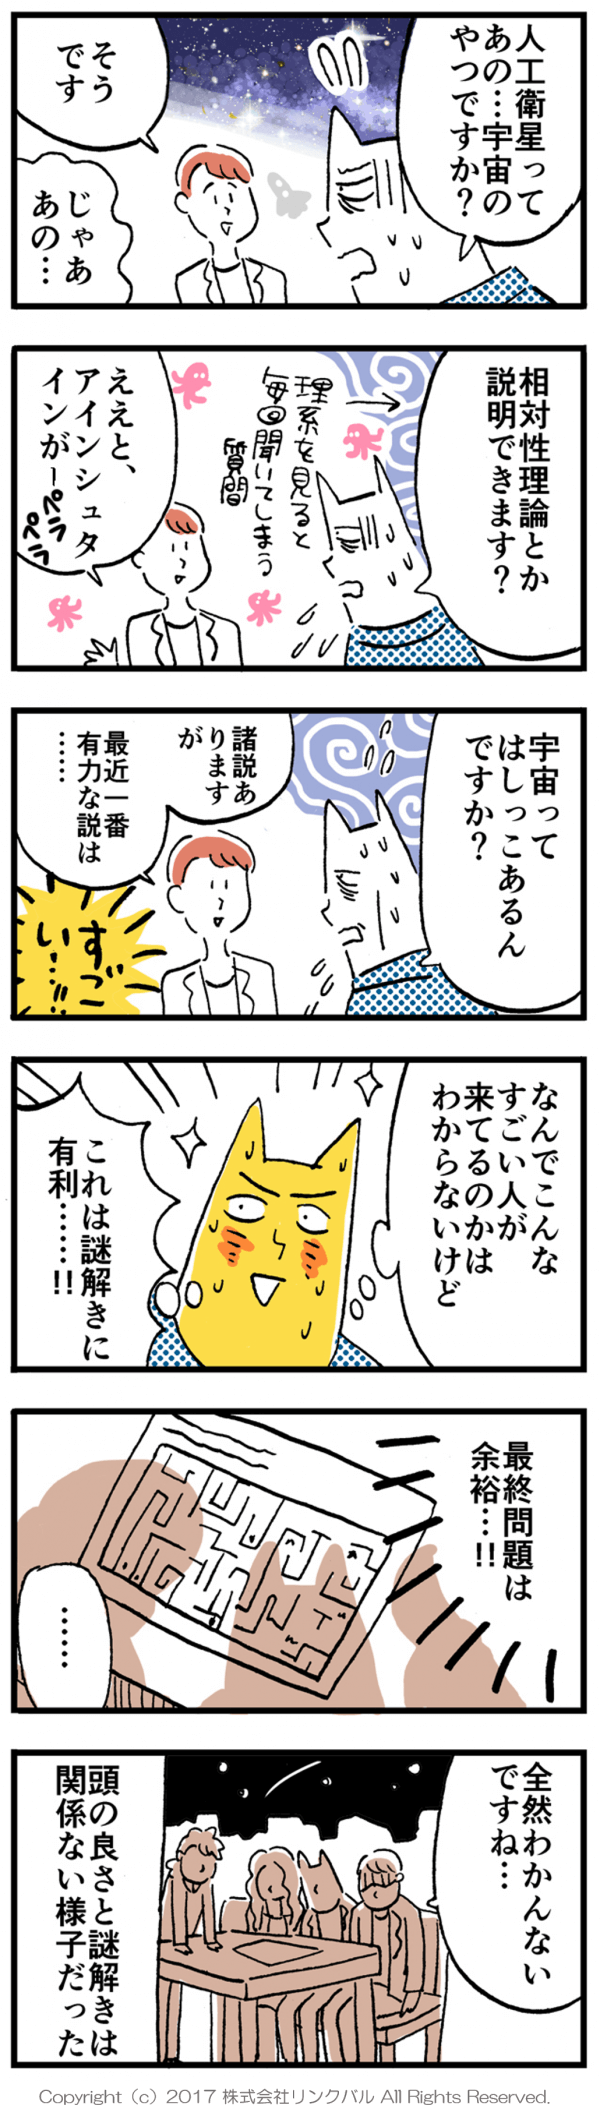 【婚活漫画】アラサー街コン物語・第16話「理系の人」